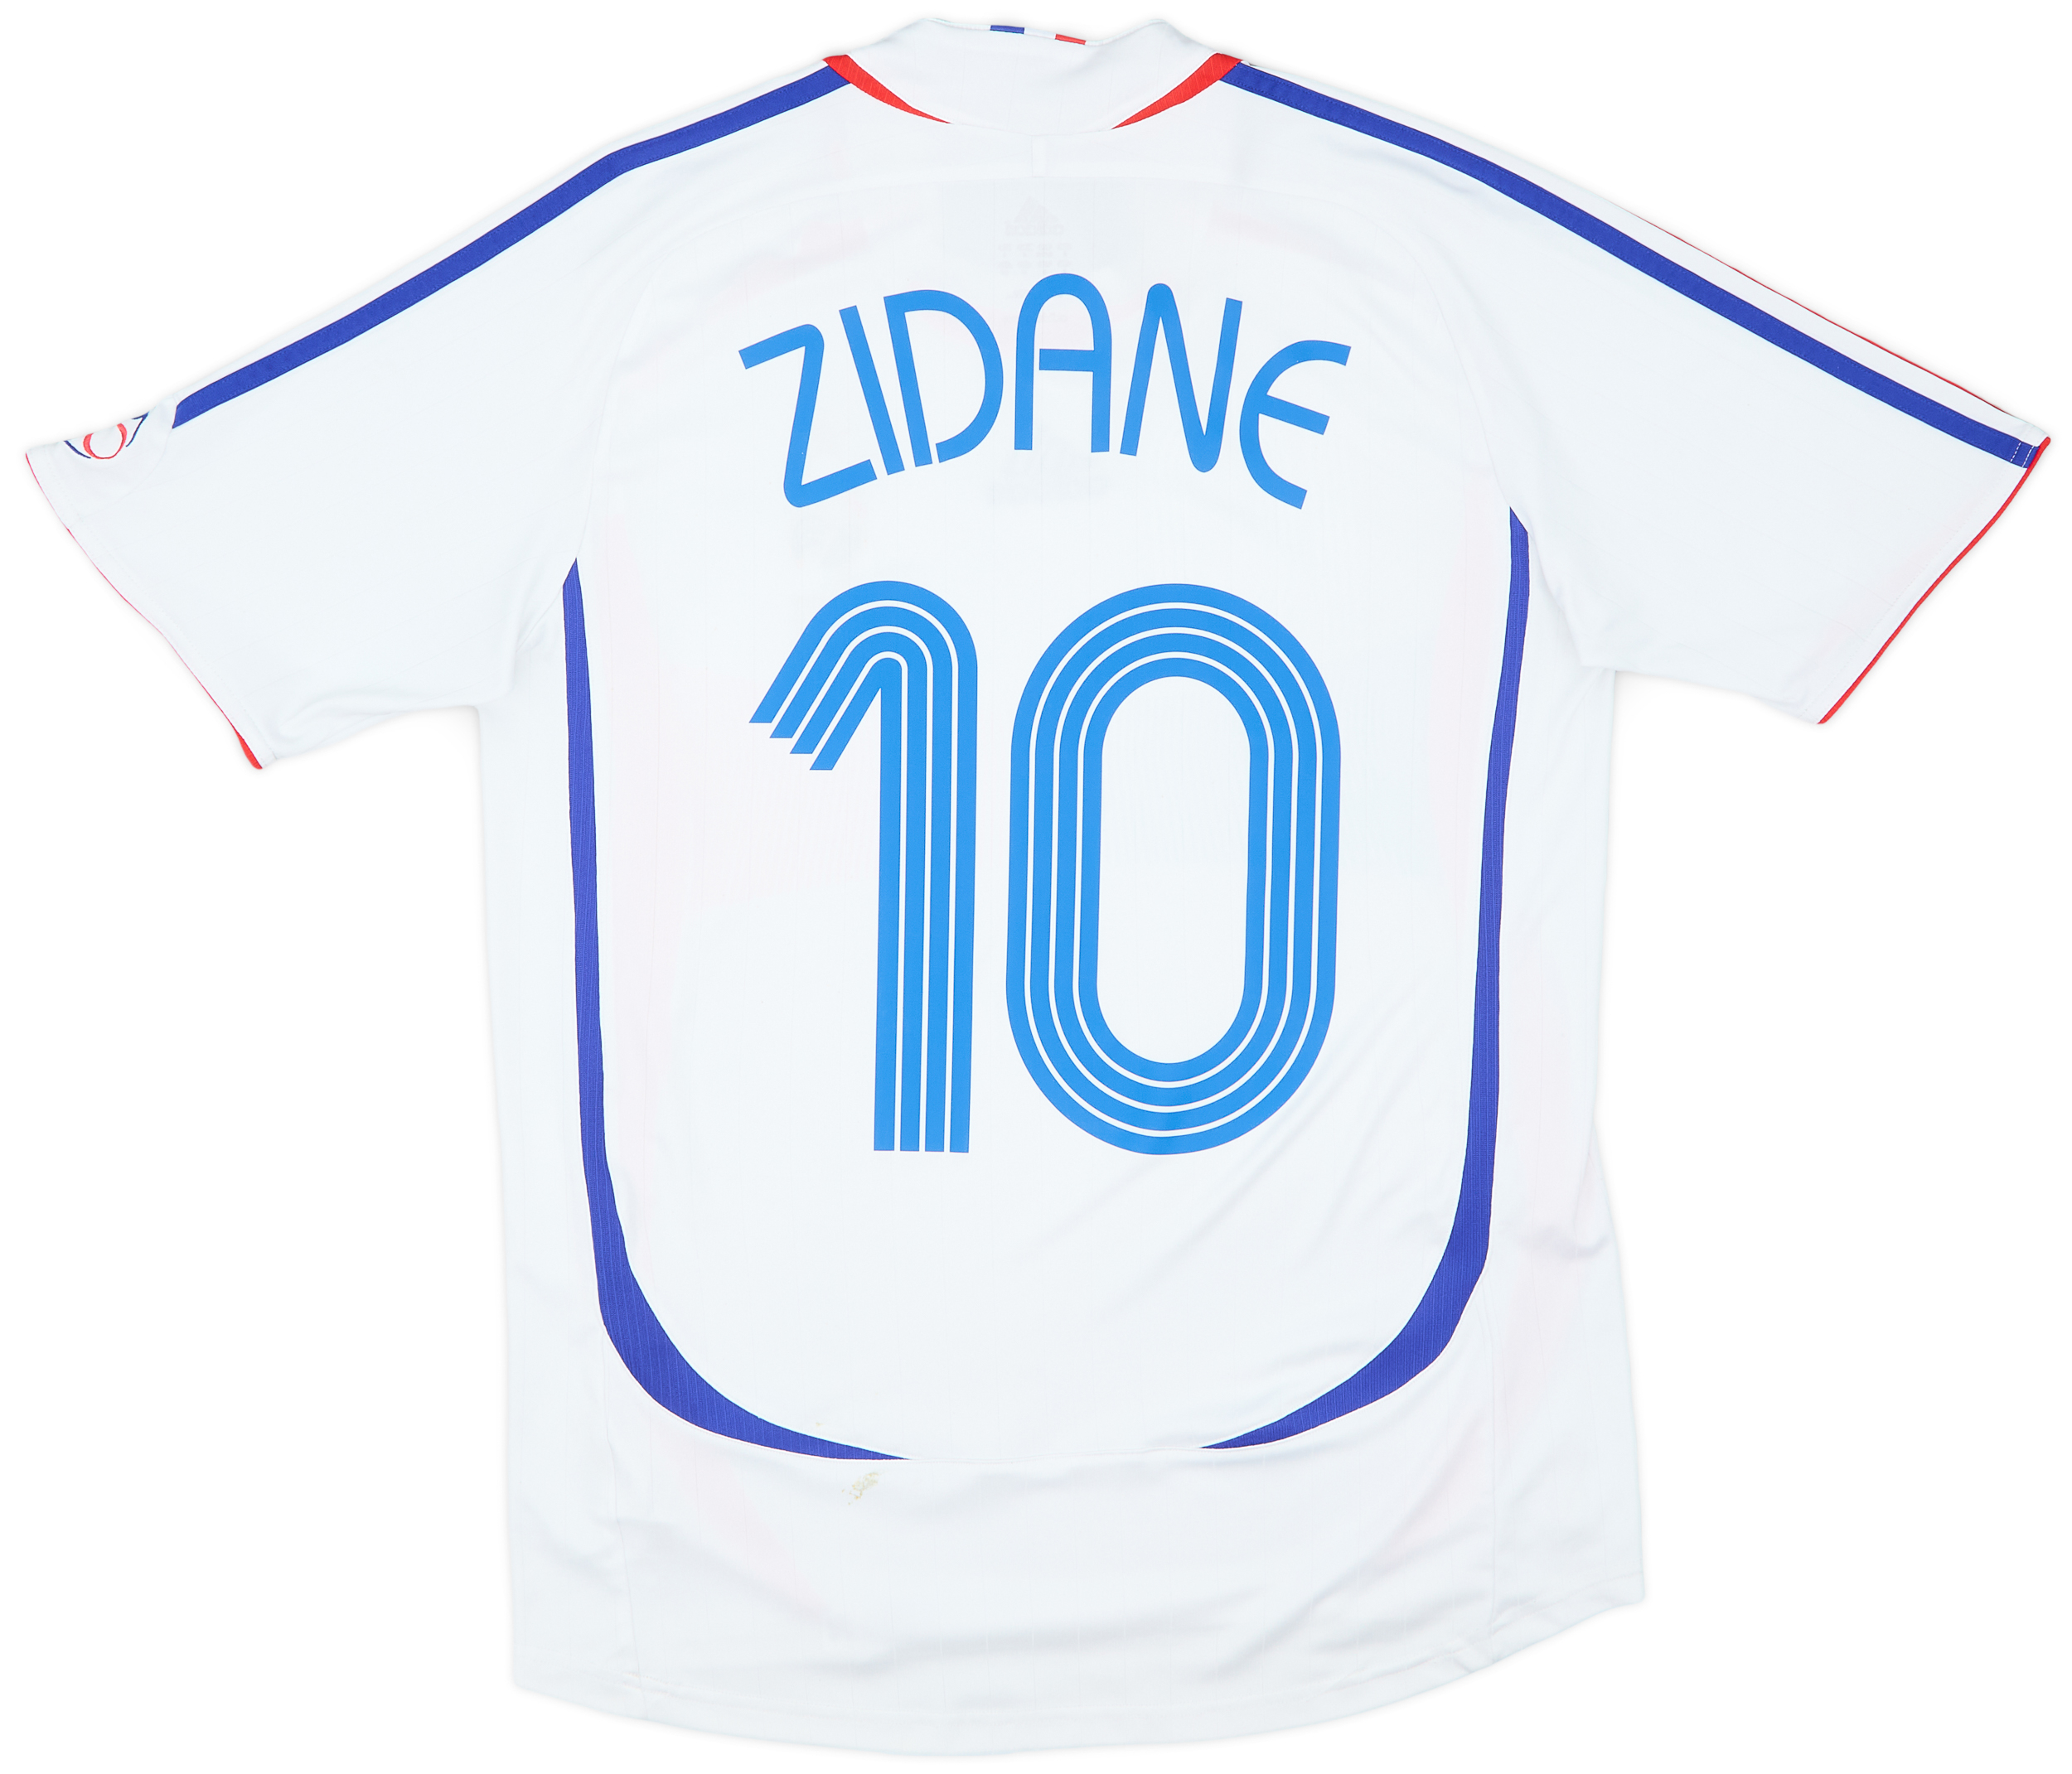 2006 France Away Shirt Zidane #10 - 7/10 - (S)